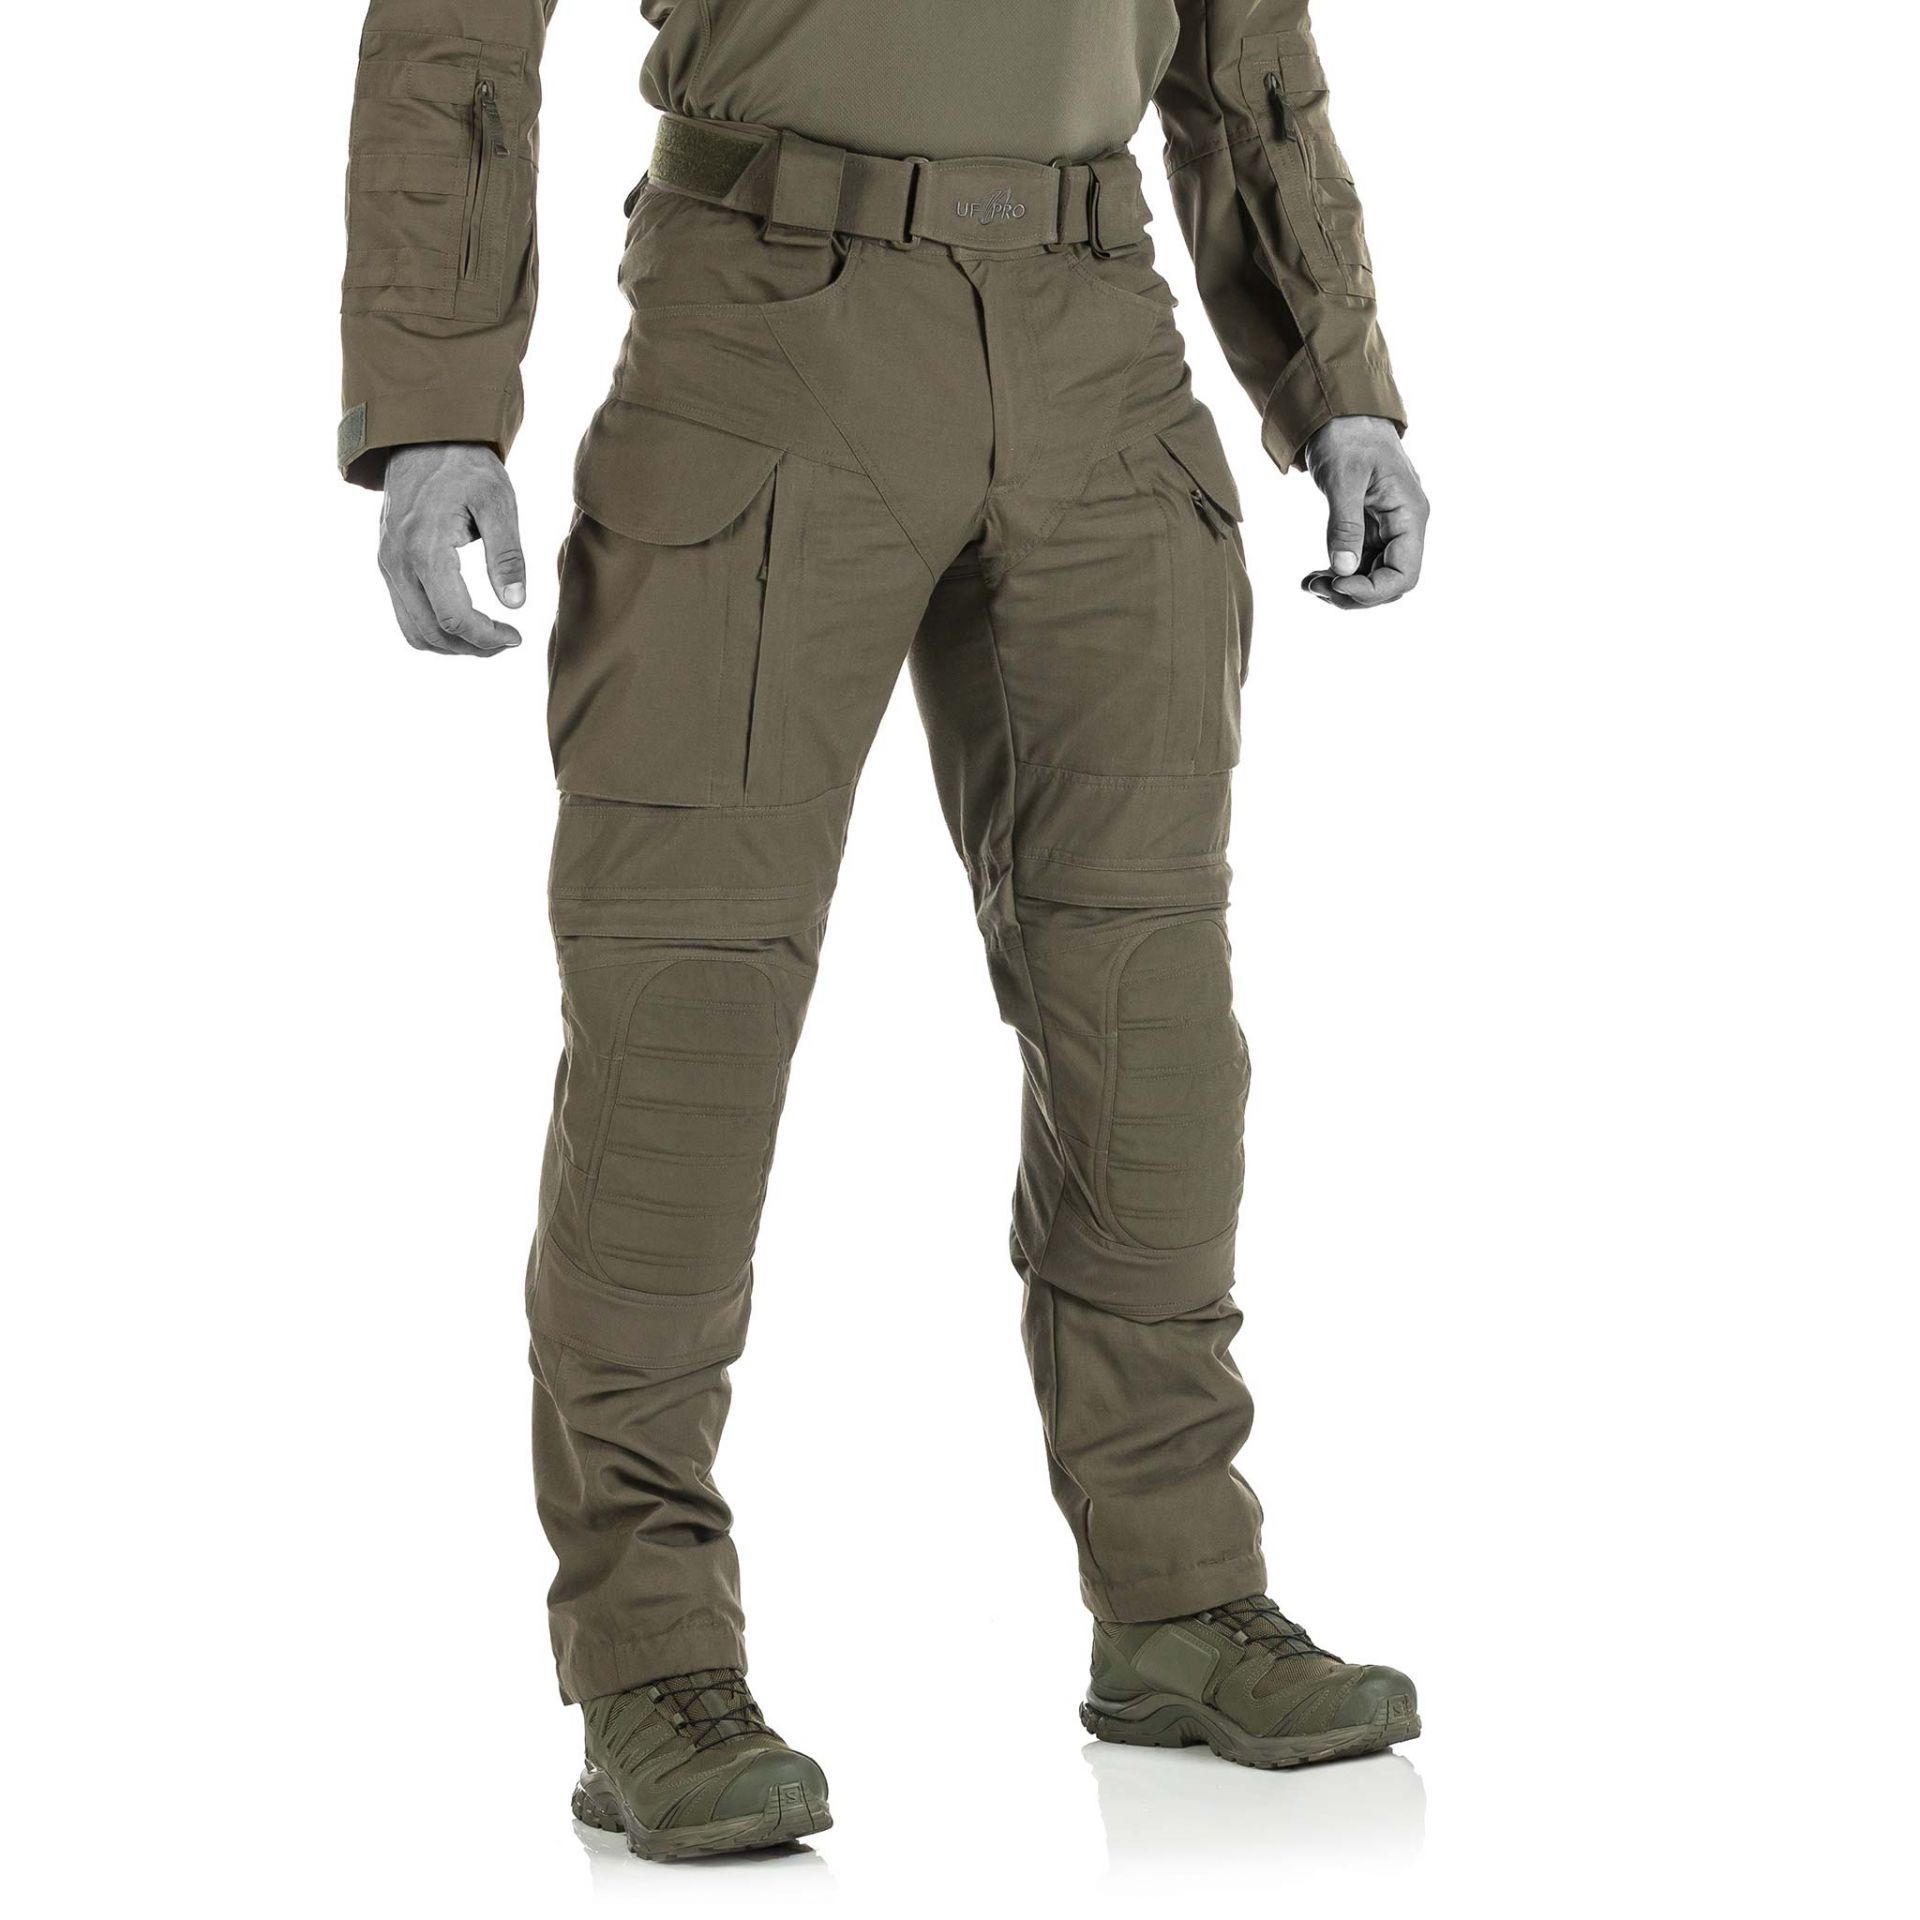 UF PRO Striker ULT Combat Pants – Urban Tactical